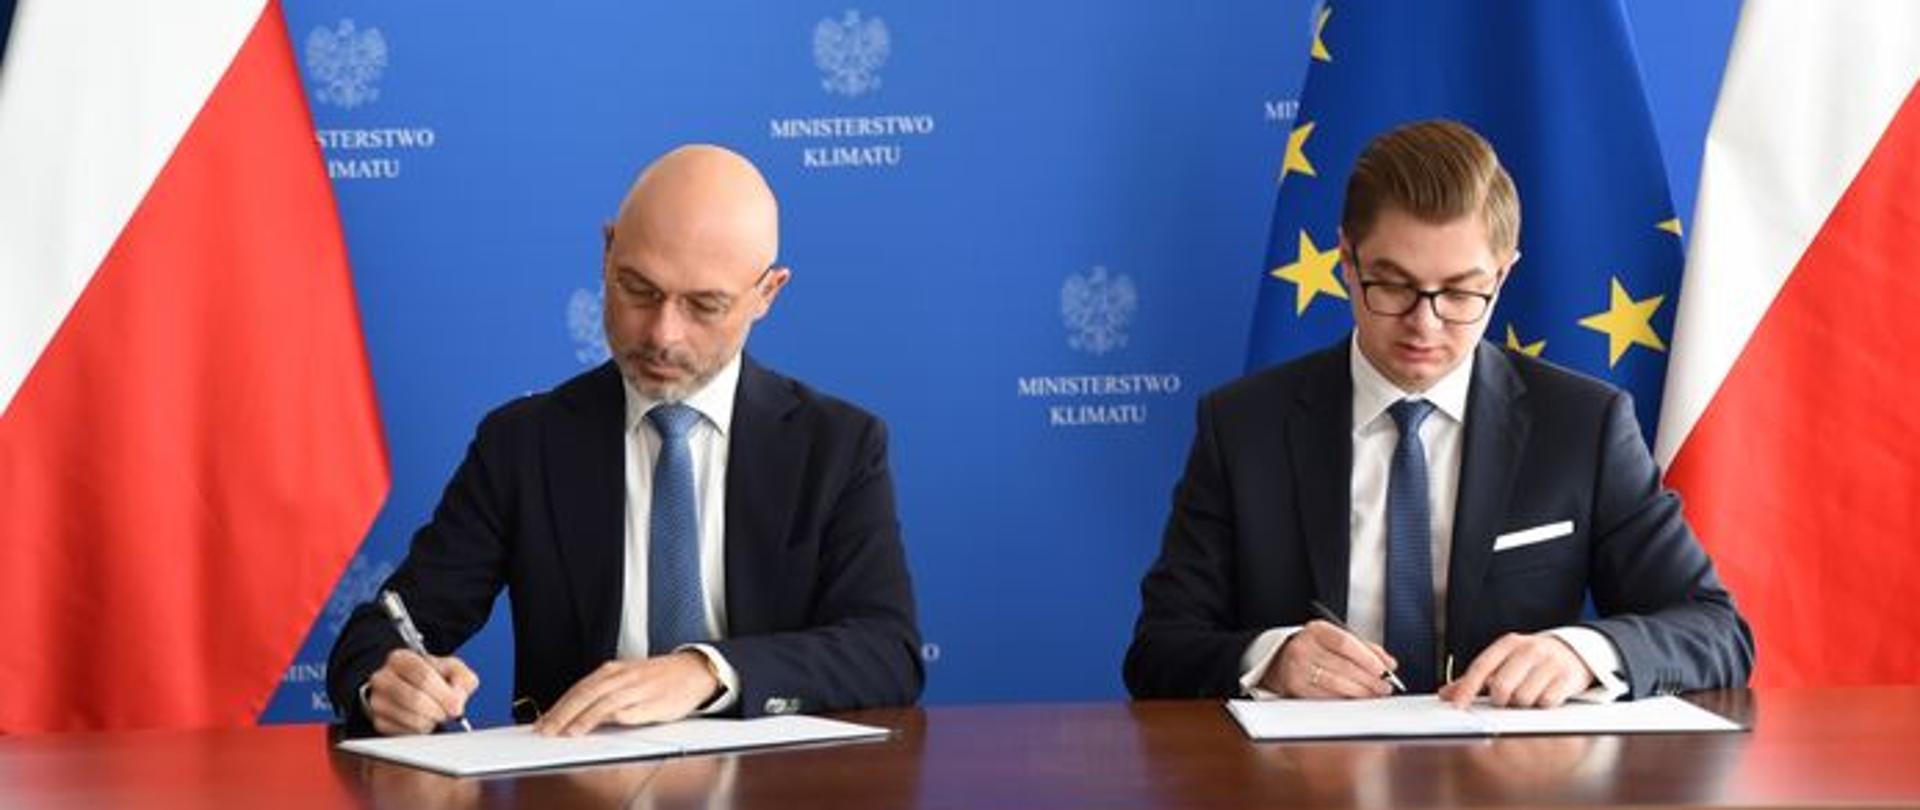 Minister of Climate - Mr Michał Kurtyka and PAA President Dr Łukasz Młynarkiewicz 